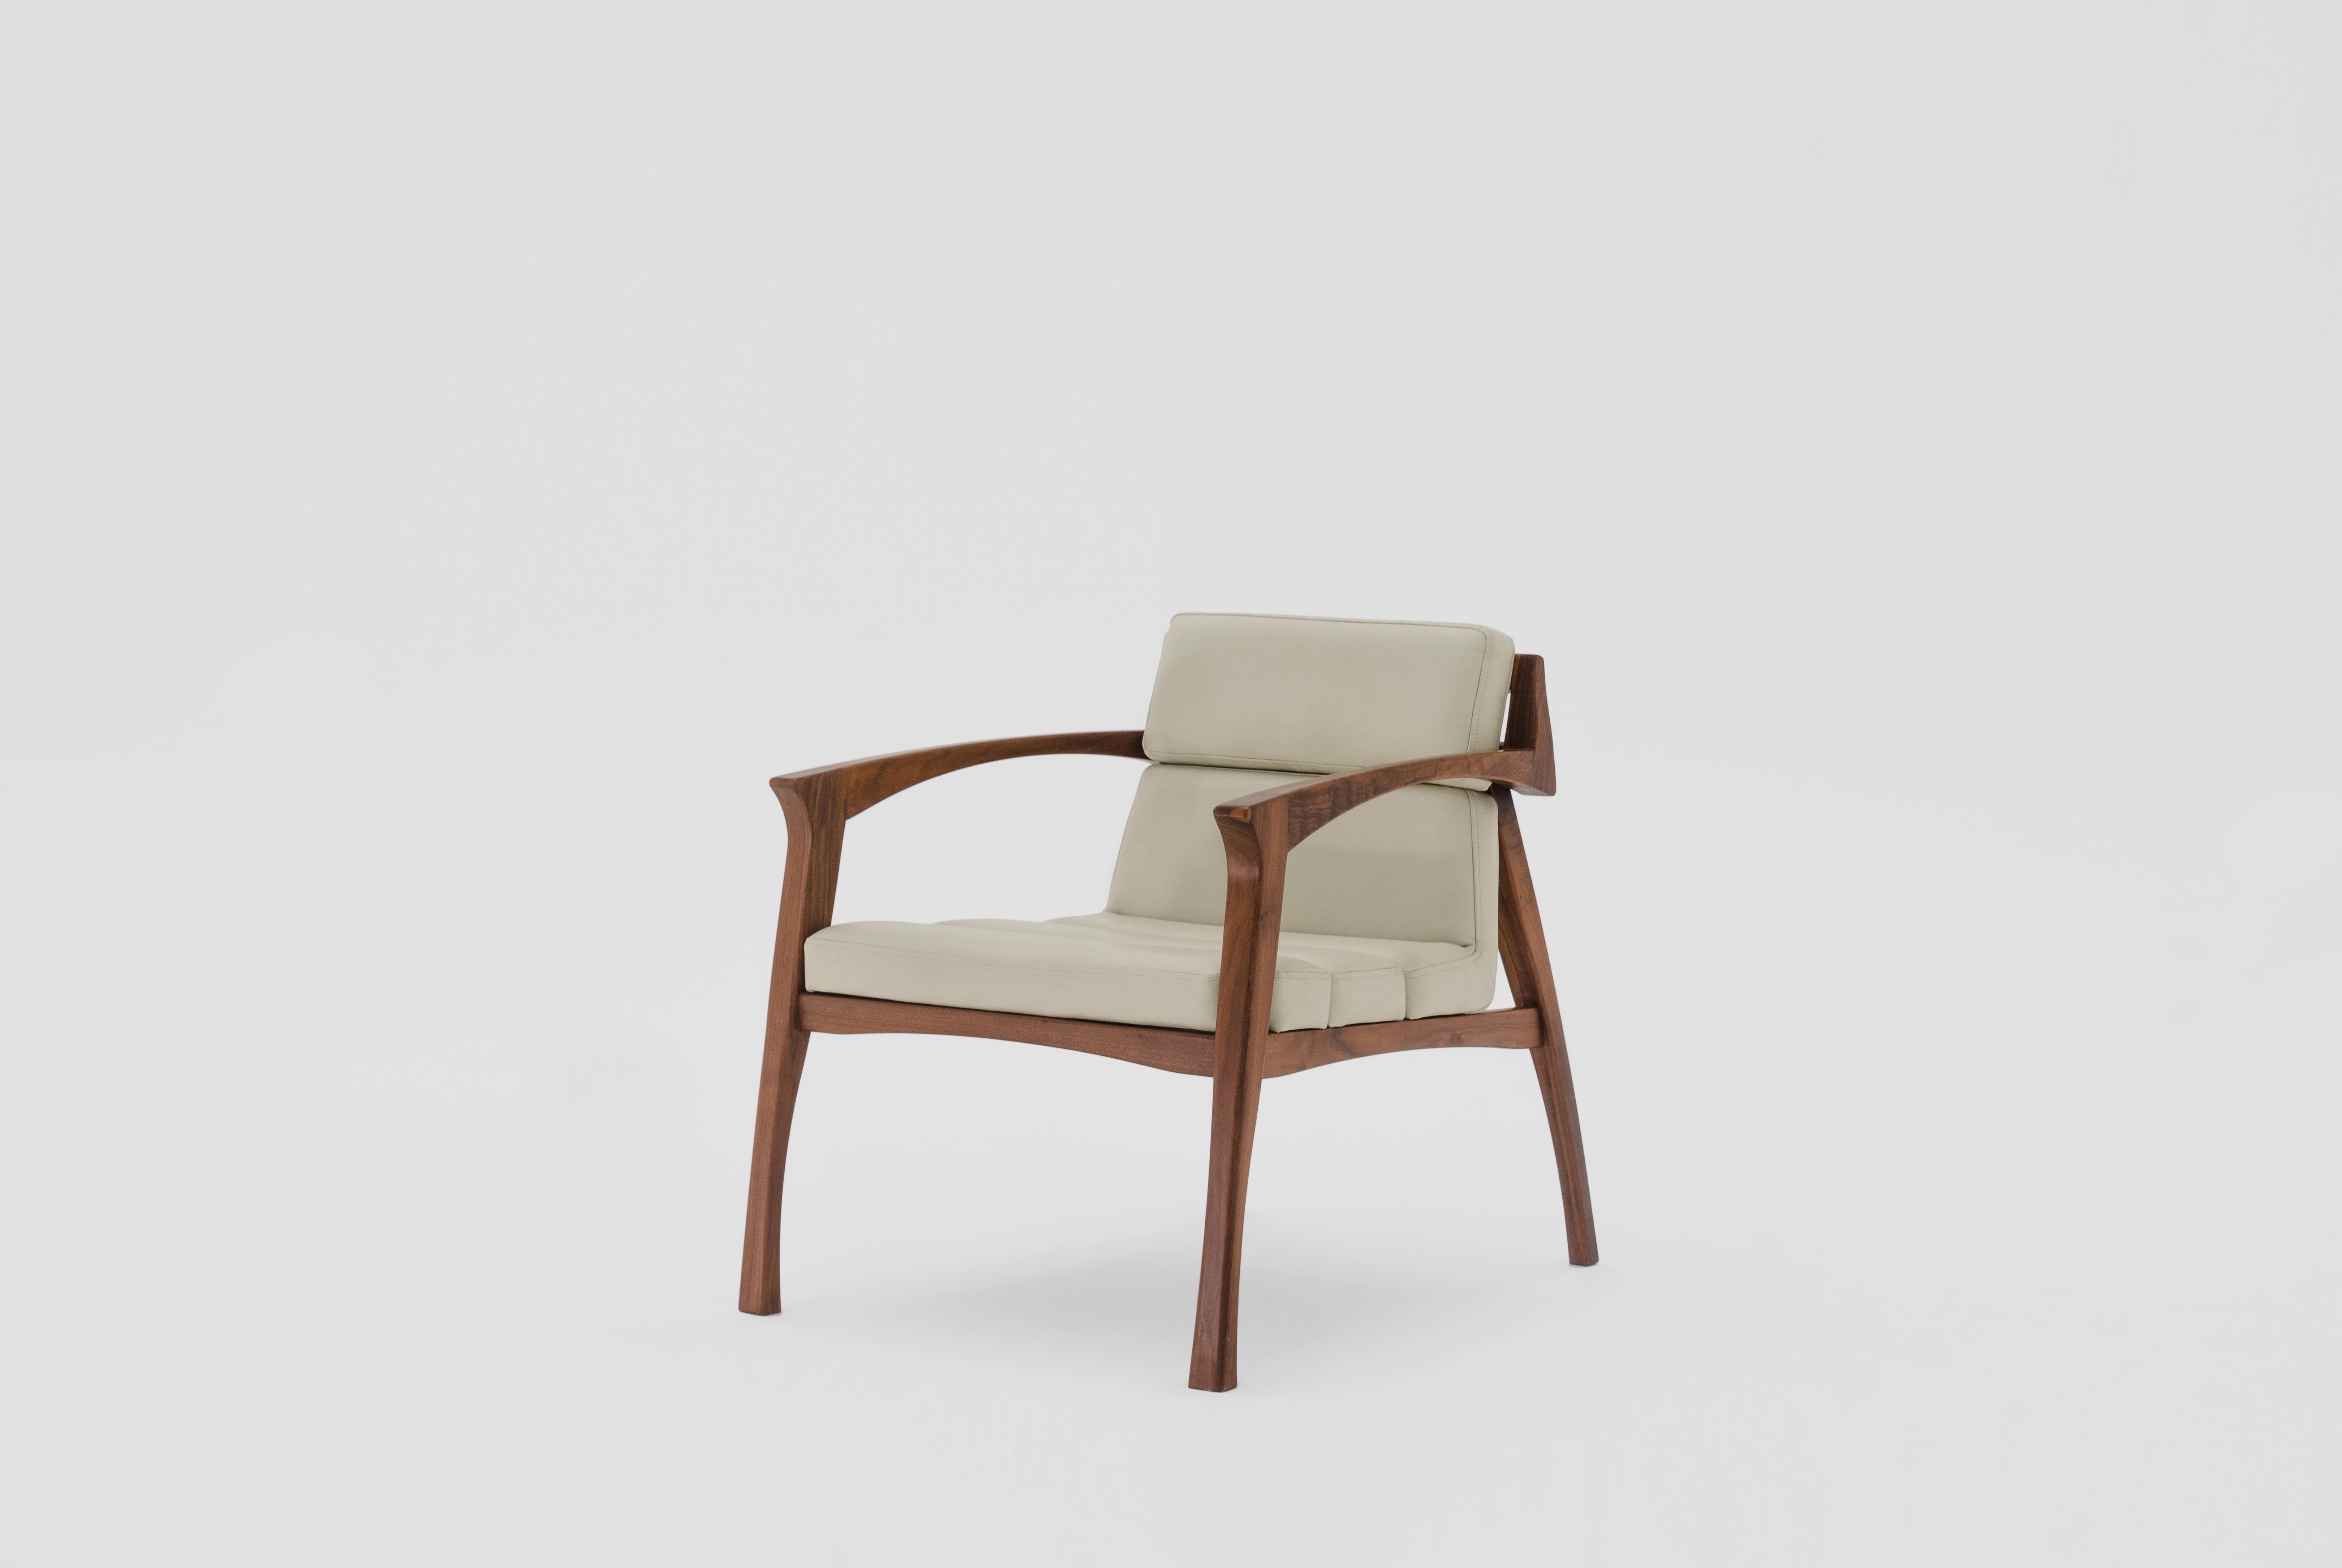 Ensemble de 4 fauteuils helmut blancs d'Arturo Verástegui
Dimensions : D 72 x L 76 x H 70 cm
Matériaux : bois de noyer, cuir.

Fauteuil en noyer vert massif, cuir.

Arturo Verástegui est le directeur et fondateur de Breuer depuis 2015. Arturo a